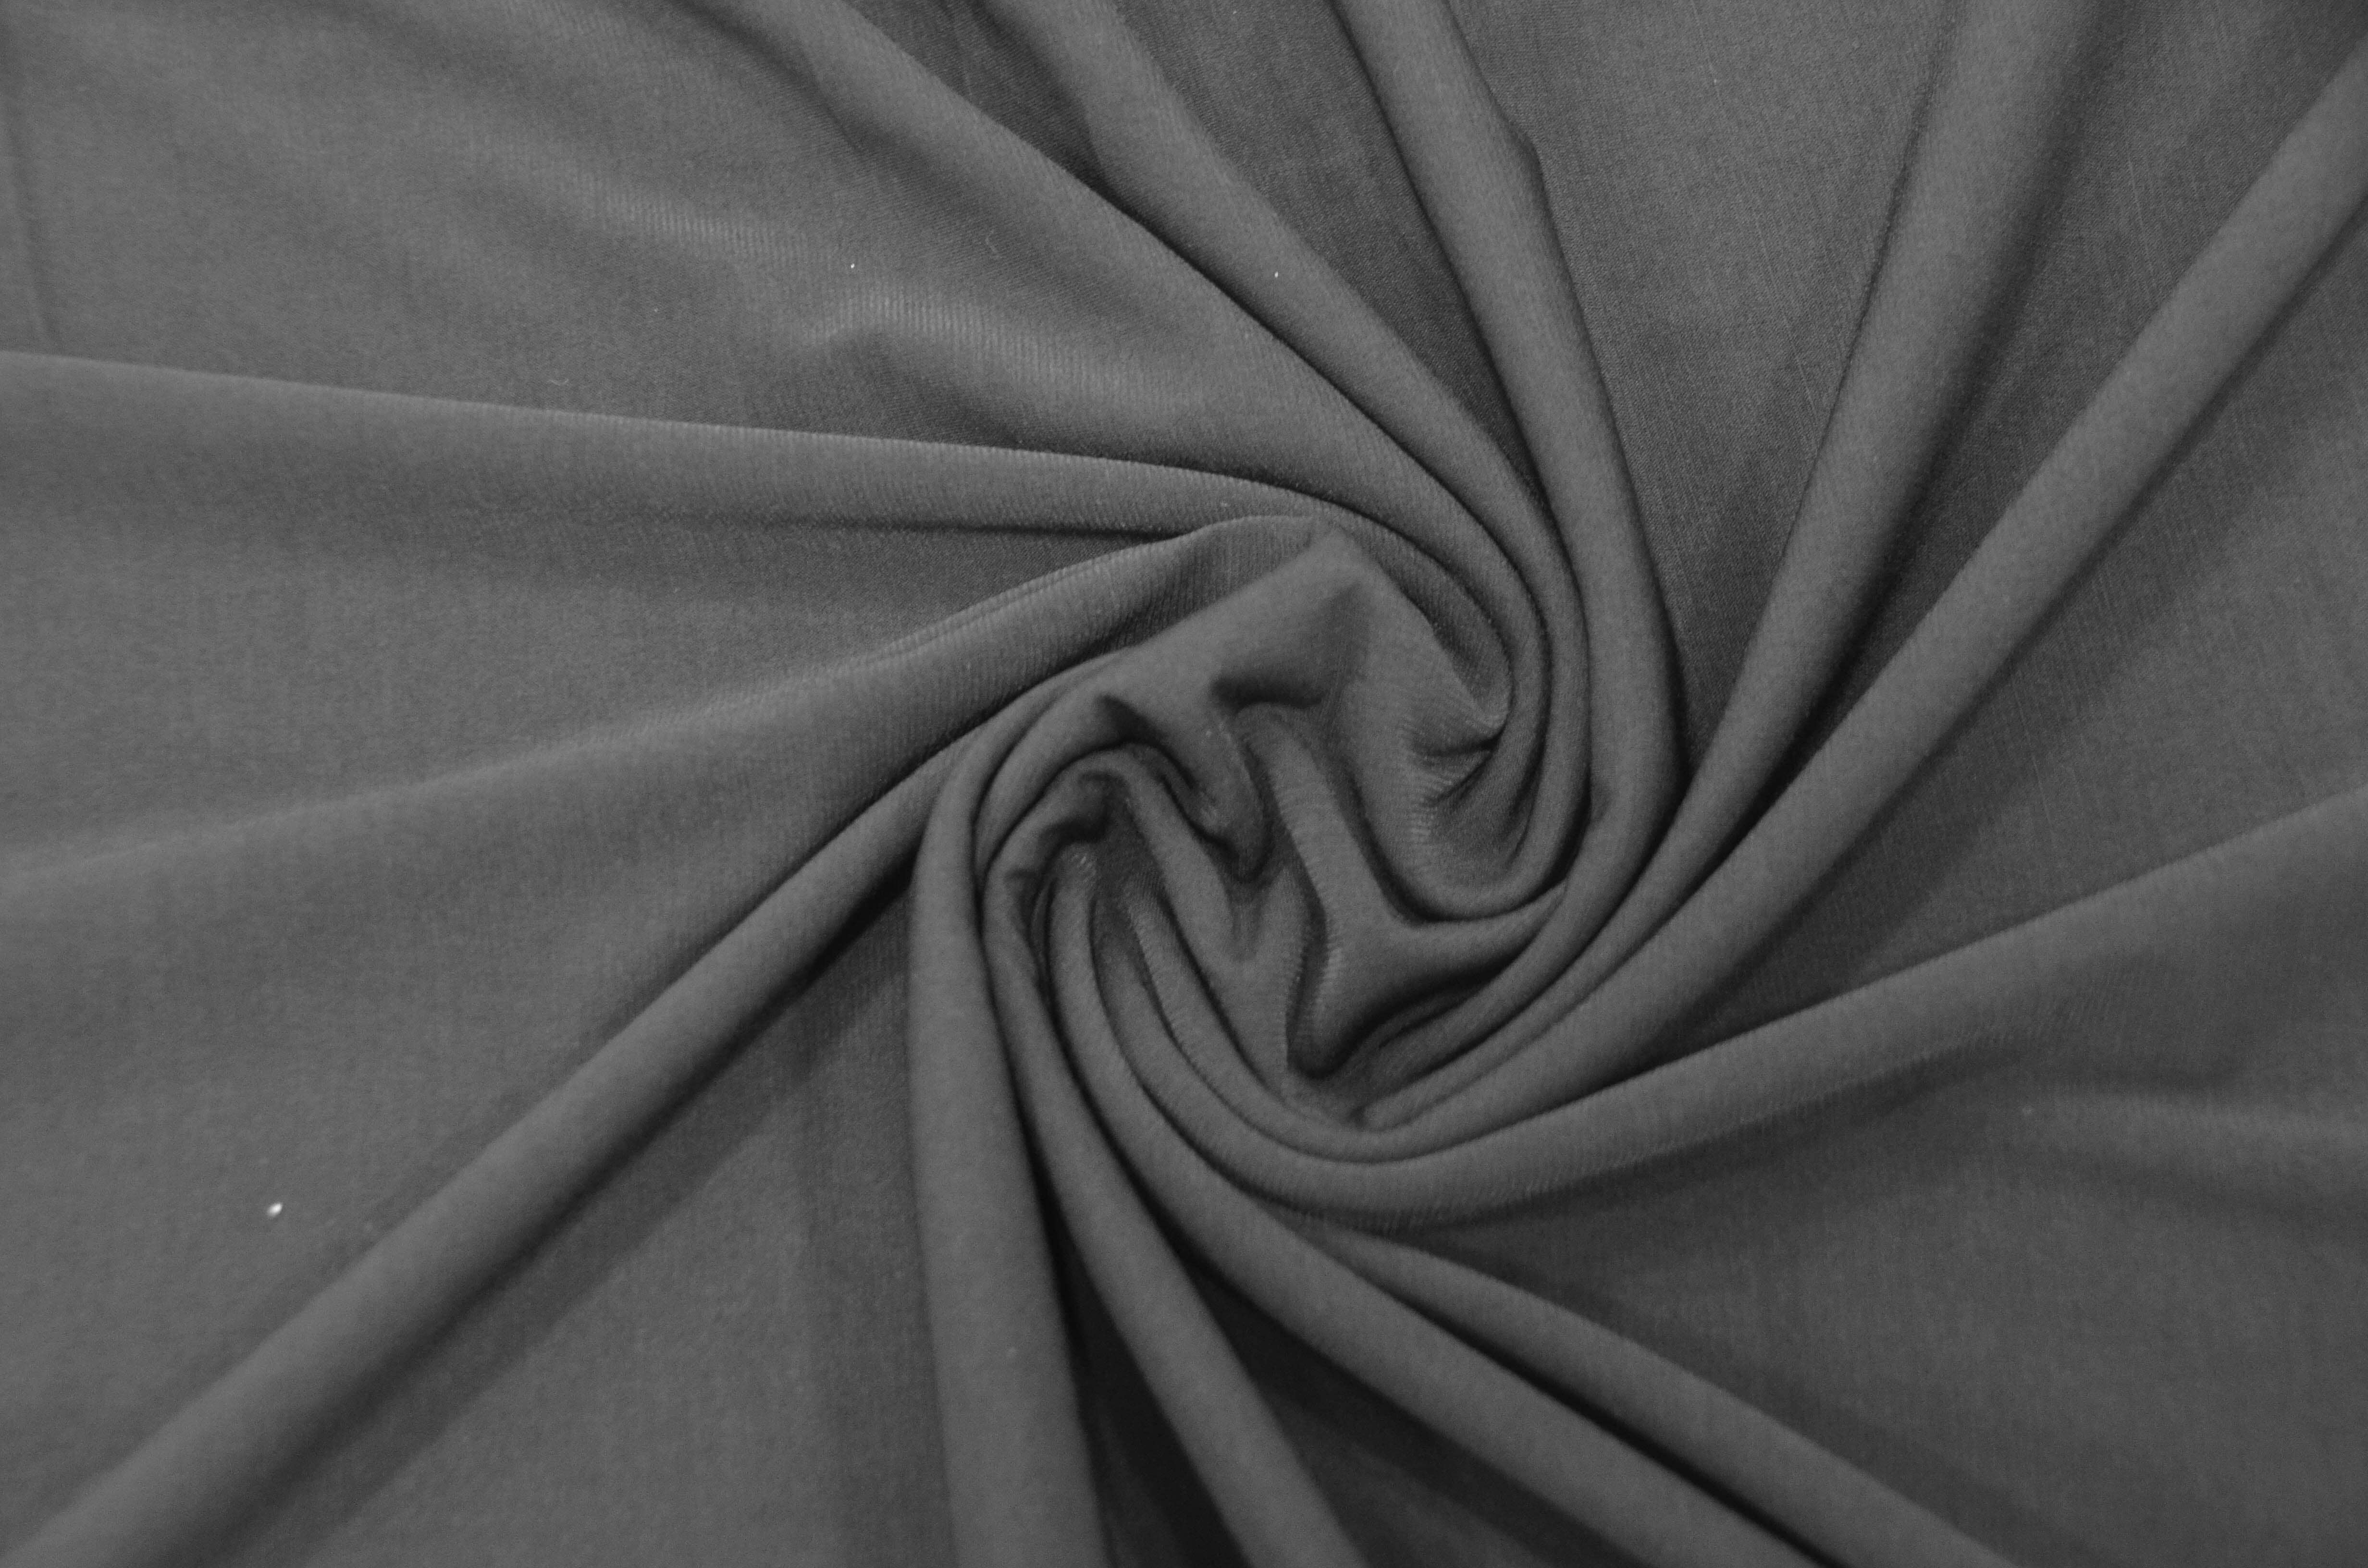  Cotton Jersey Lycra Spandex Knit Stretch Fabric 58/60